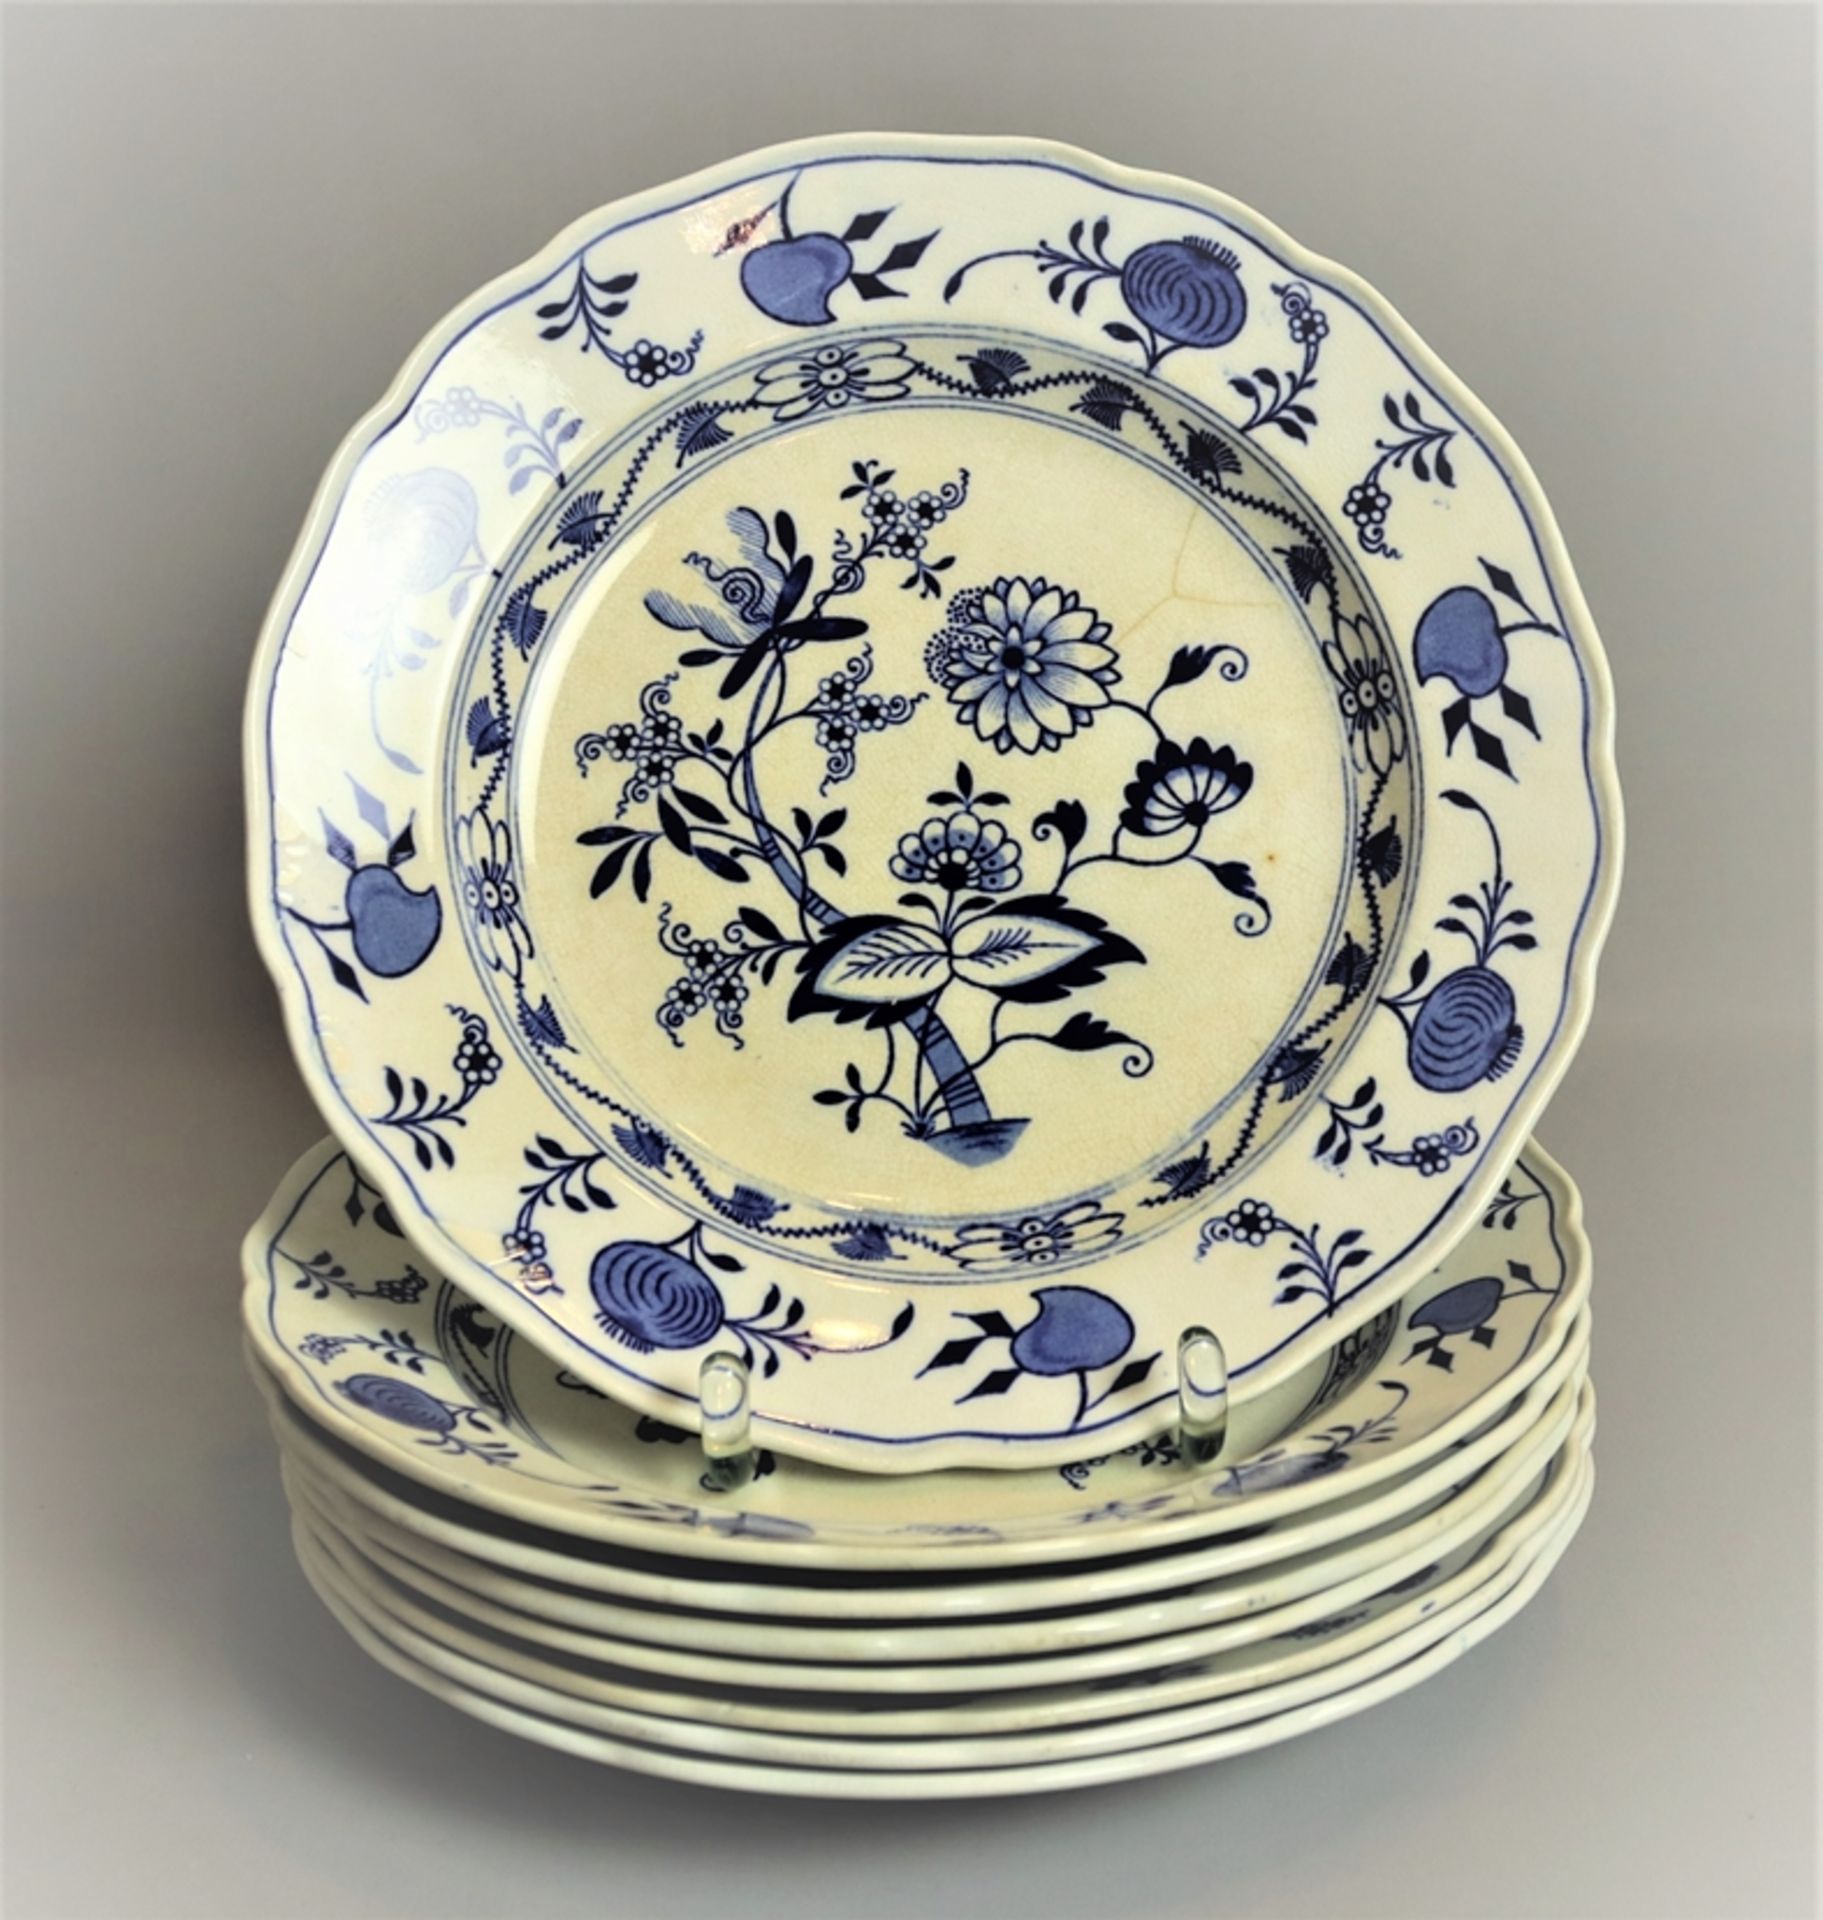 8 Essteller Stadt Meißen, Keramik um 1900, weißer Scherben, blau weiß verziert, wellenförmiger Rand